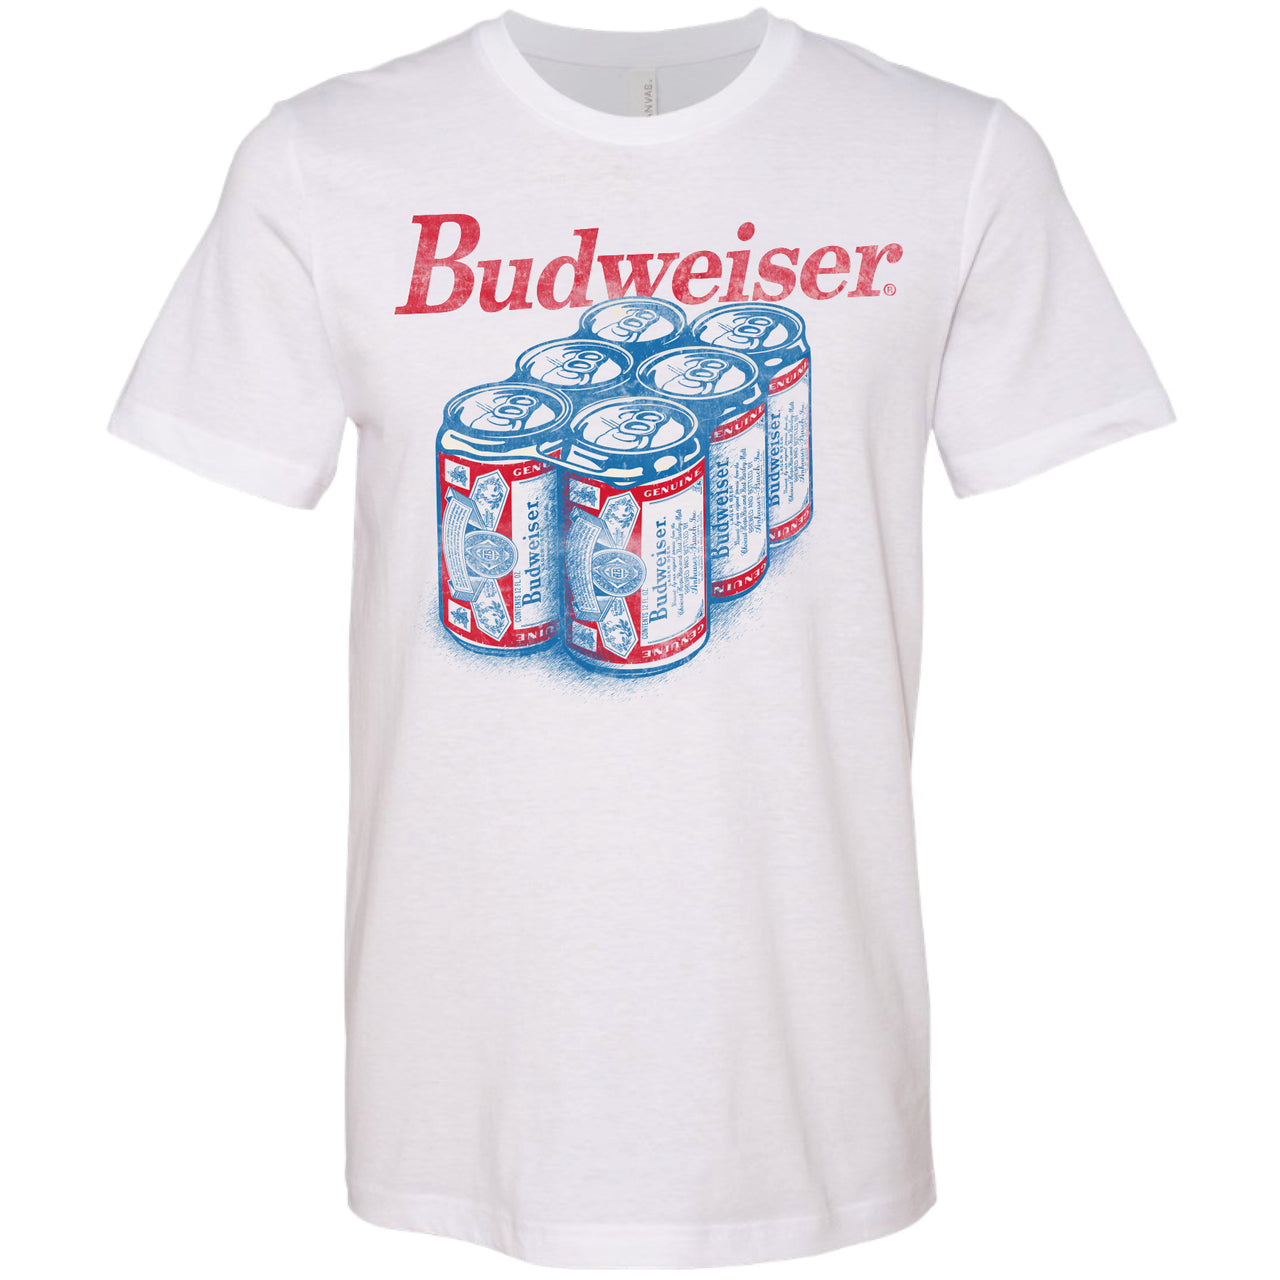 Budweiser - Six Pack T-Shirt